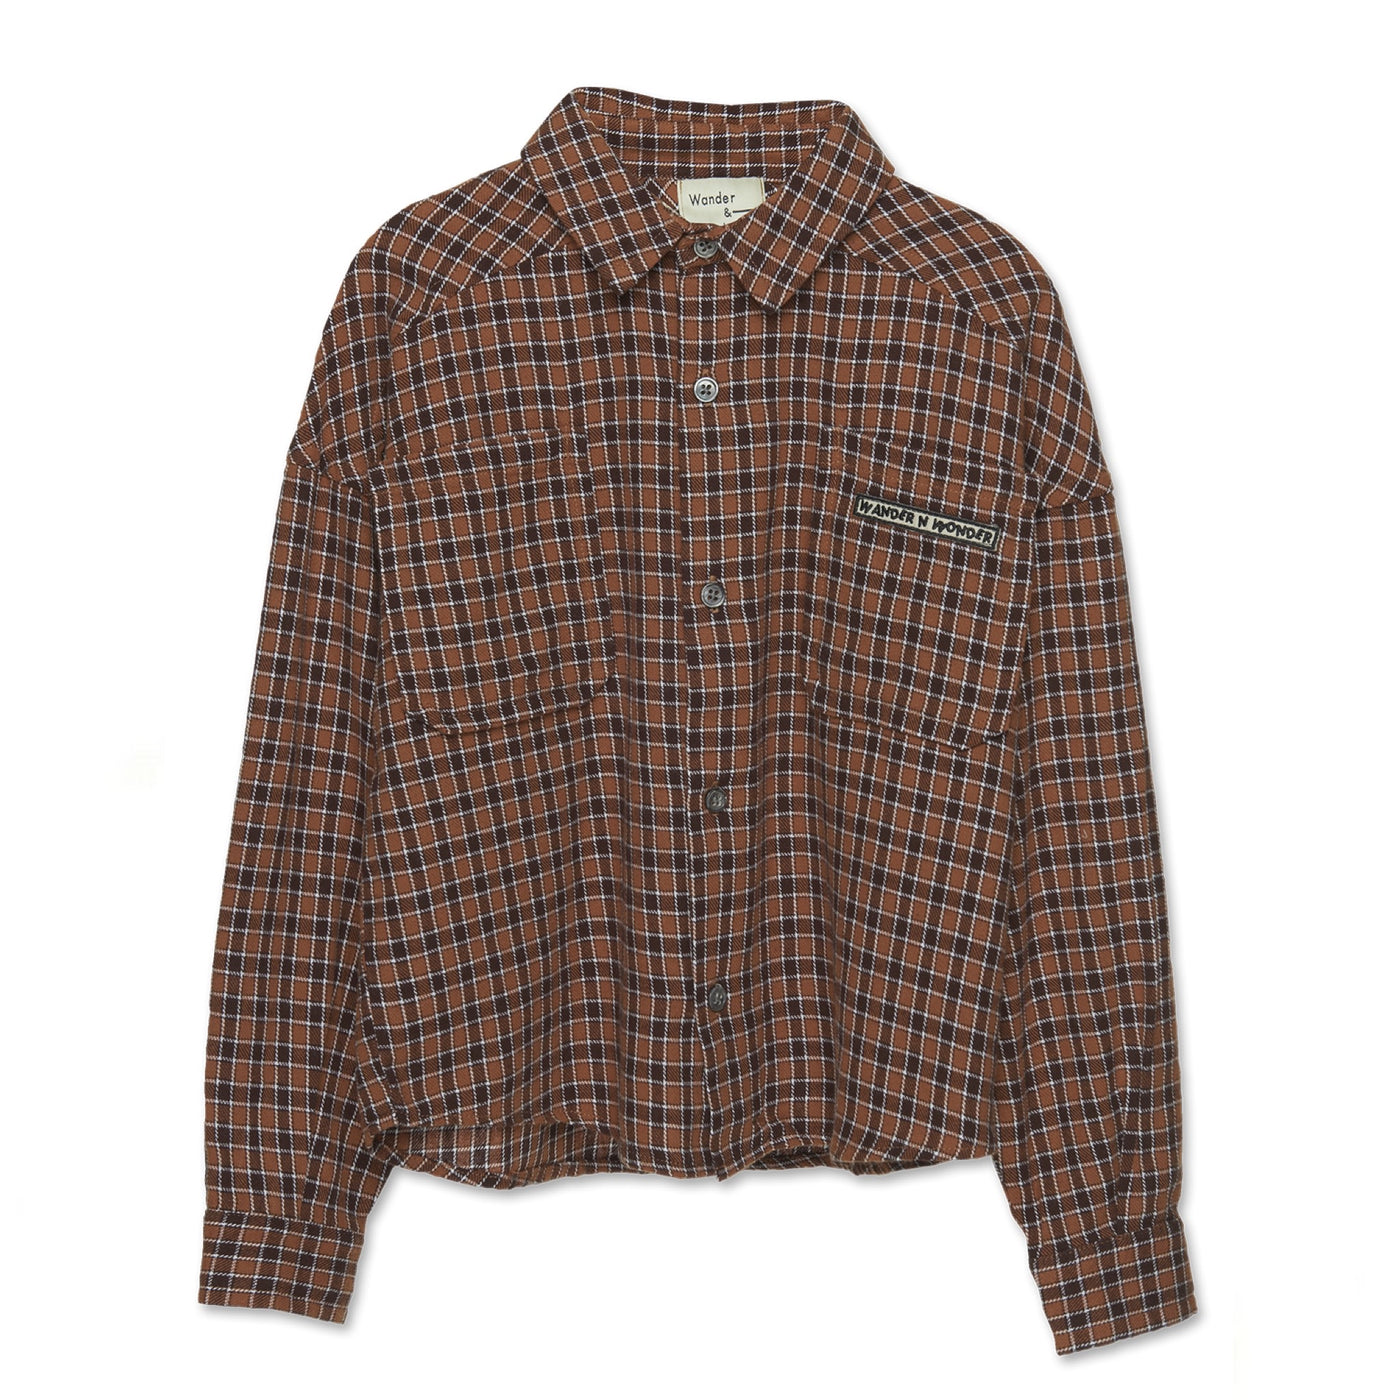 Wander & Wonder - Button down shirt brown plaid / 3-4y, 7-8y & 9-10y